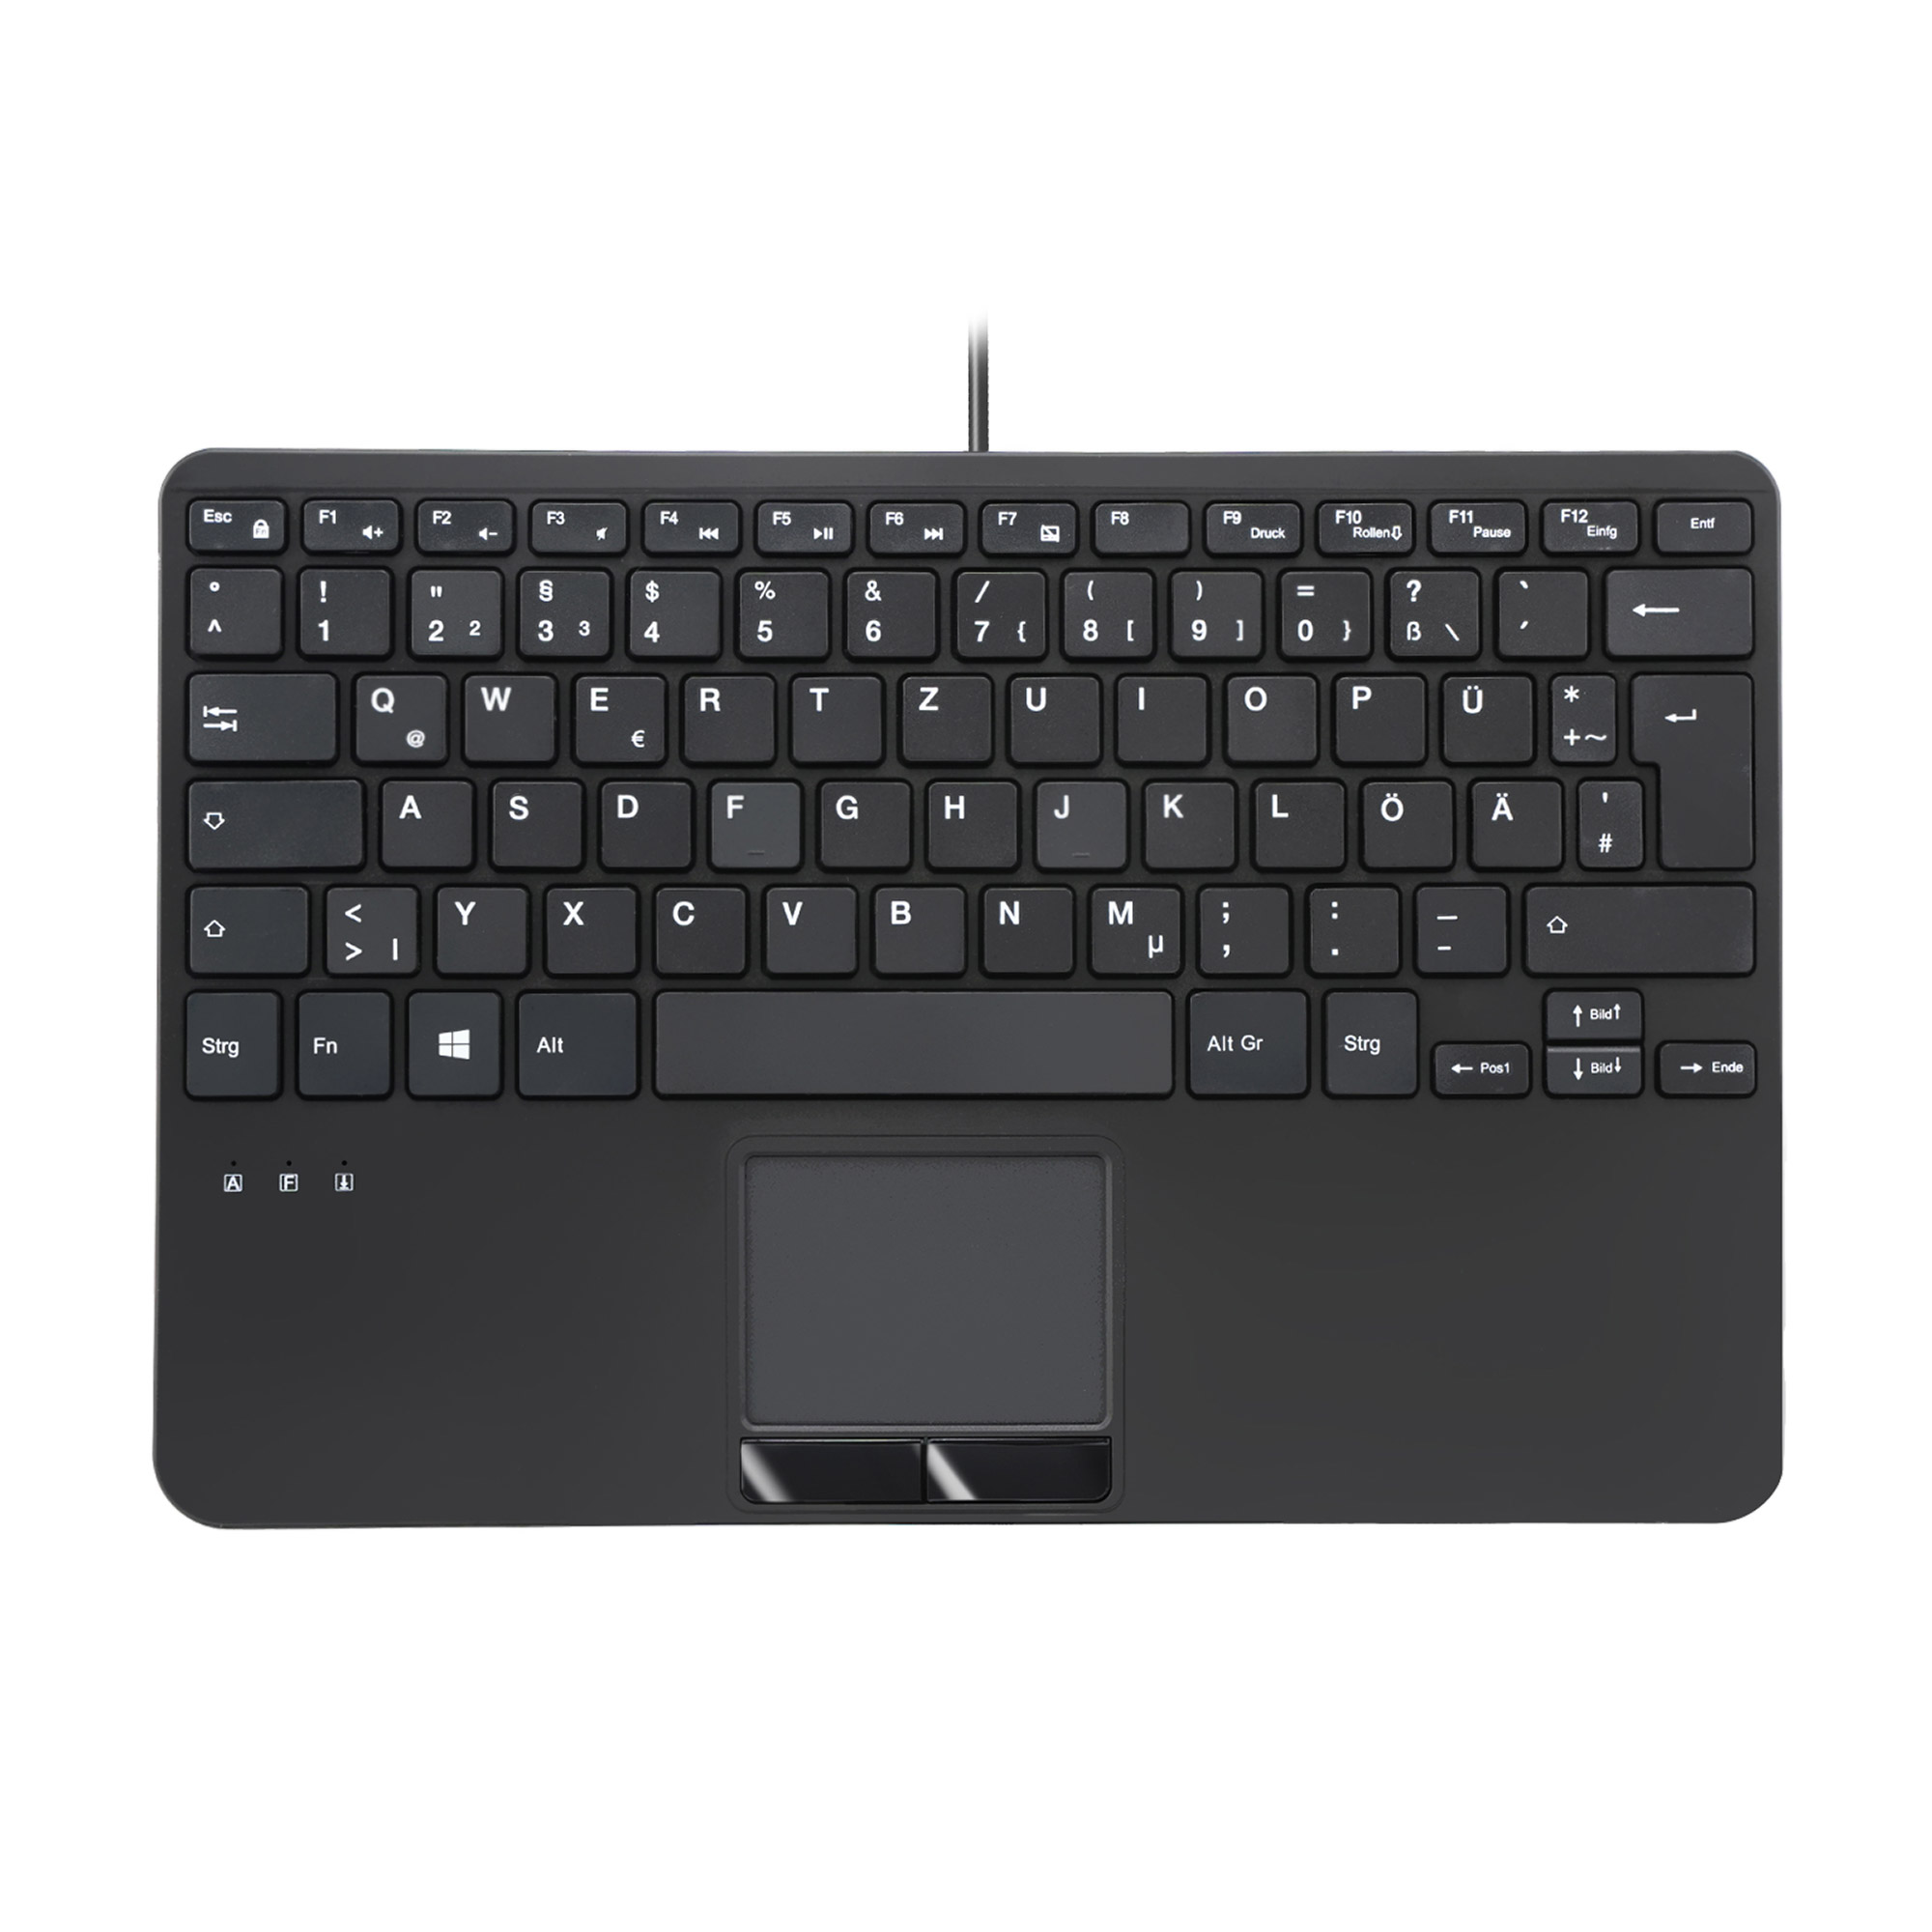 Perixx PERIBOARD-525 DE B, Mini-USB-Tastatur mit Touchpad, schwarz